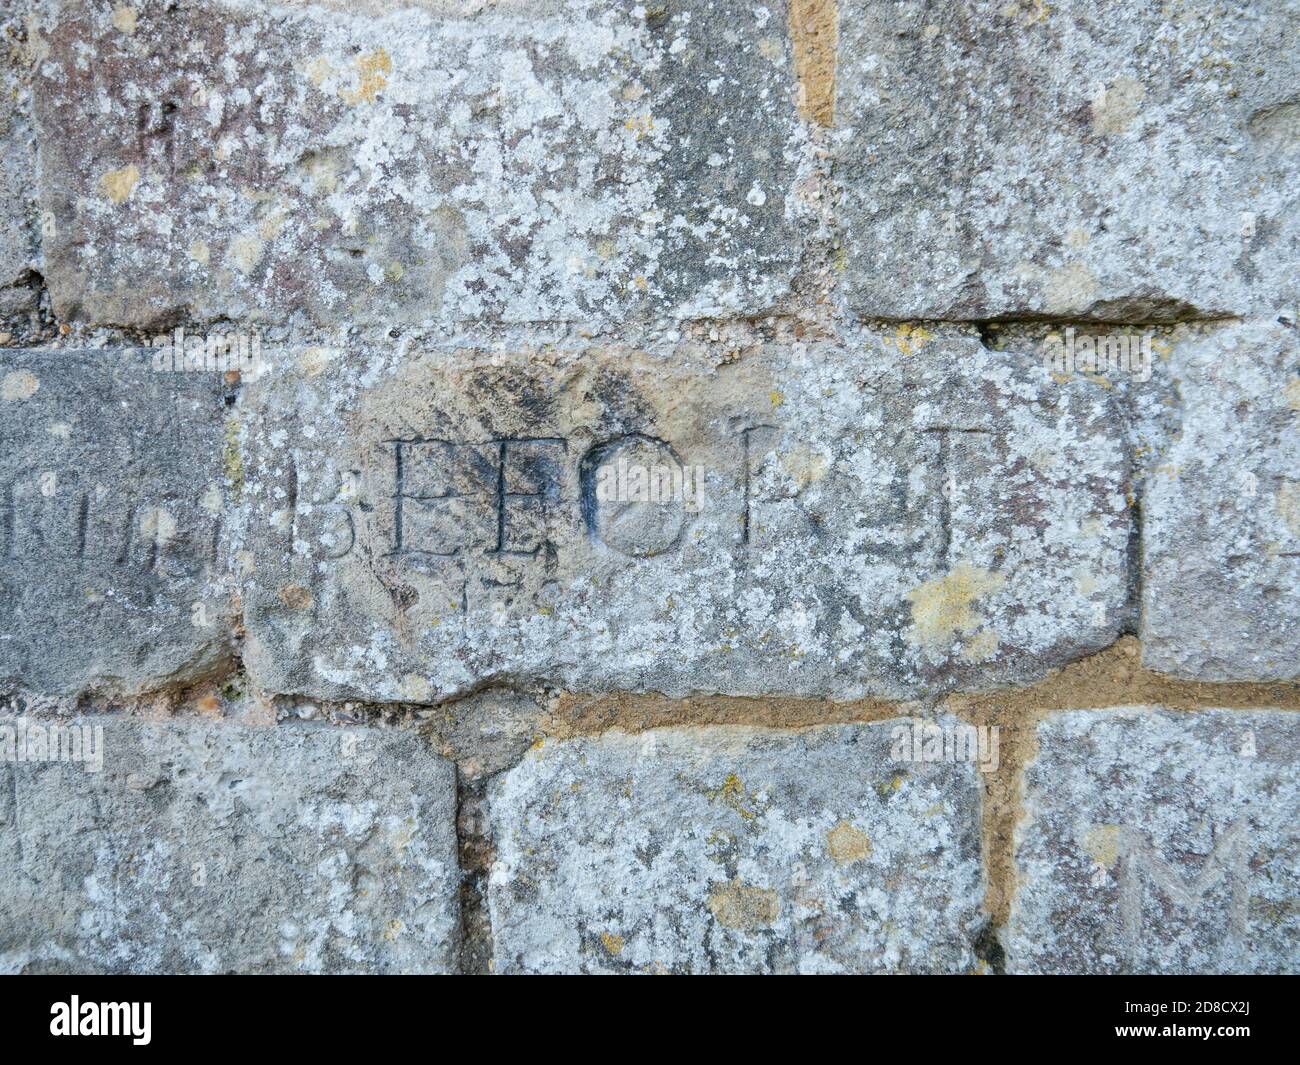 Graffiti hecho por prisioneros de guerra napoleónicos, inscrito en las paredes del castillo de Portchester, Inglaterra. Foto de stock